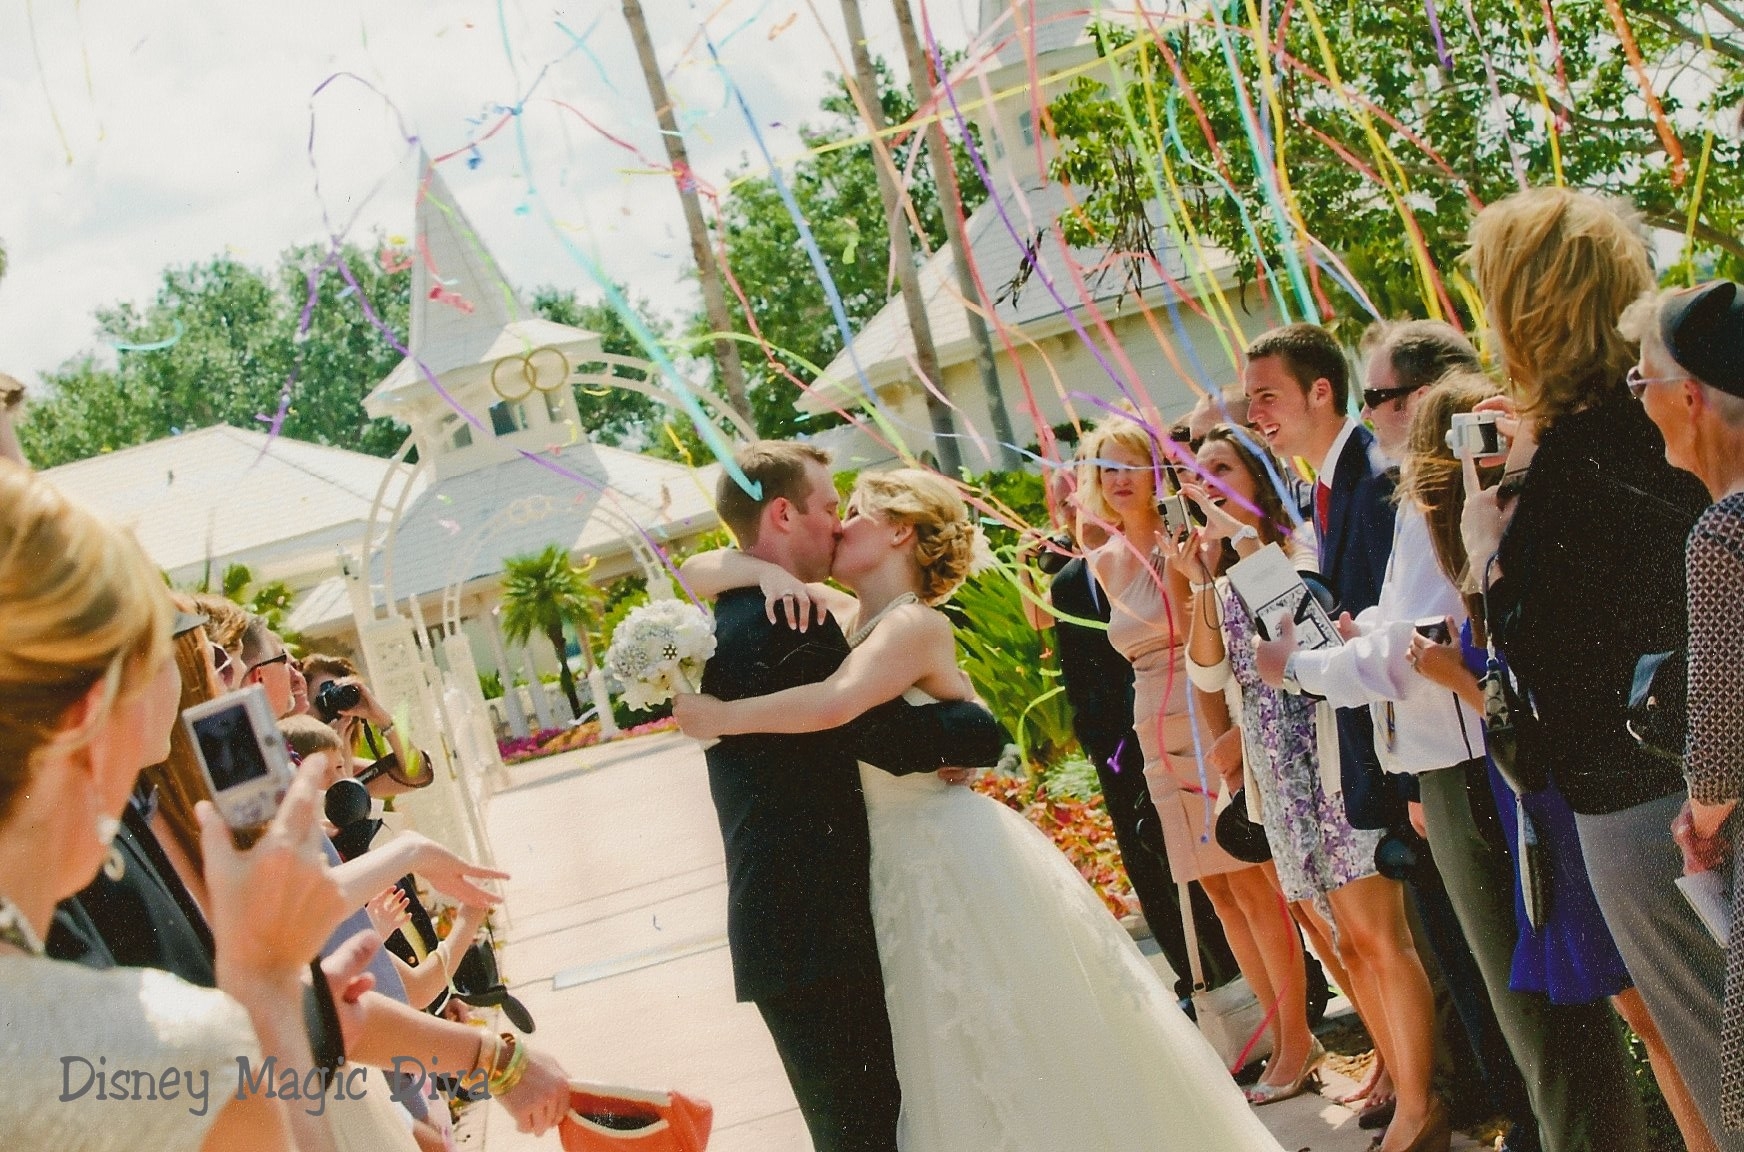 Tips to Make Your Disney Wedding Dream Come True